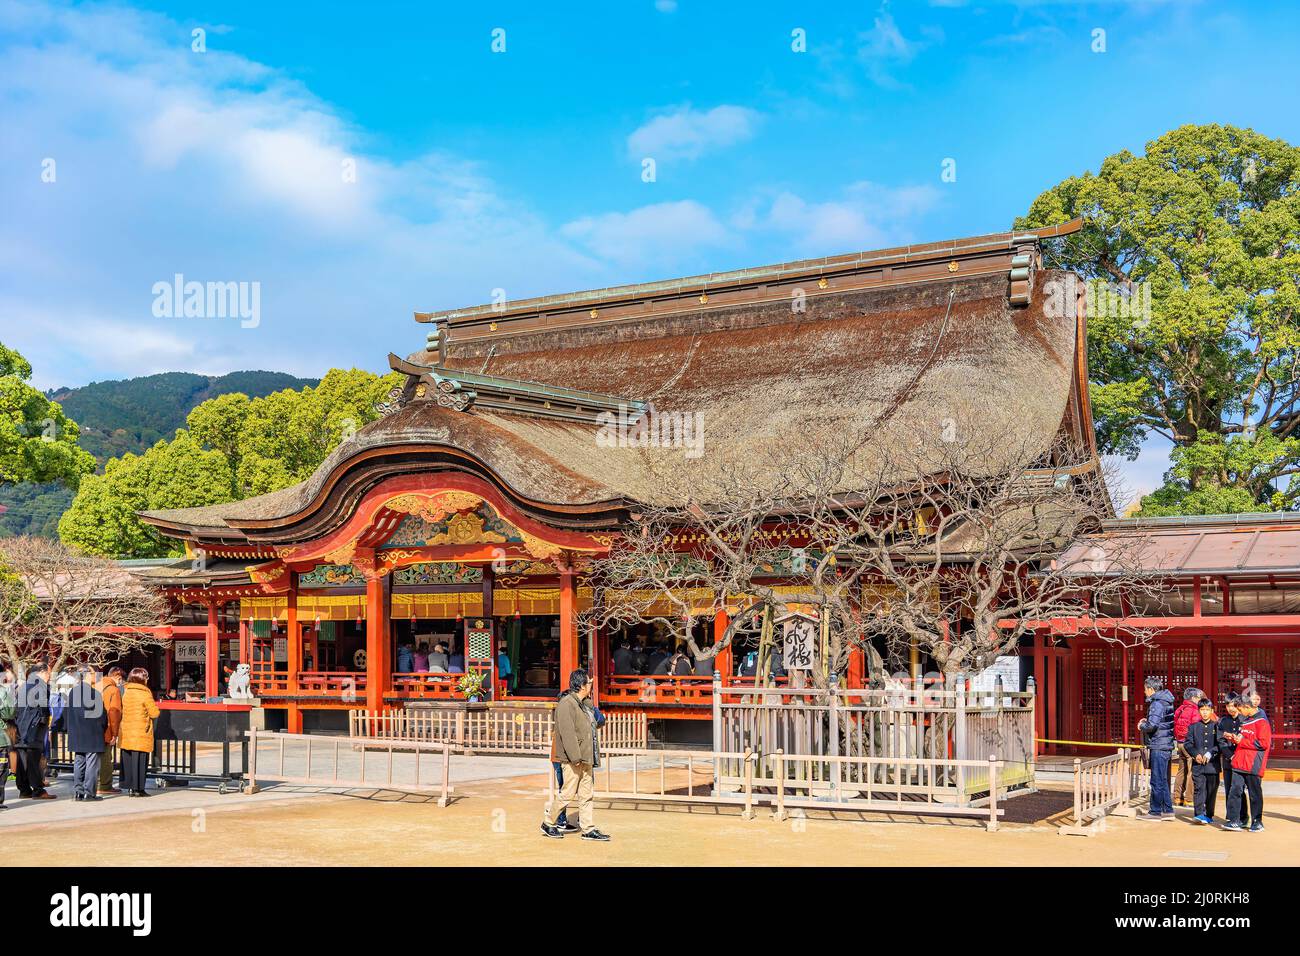 kyushu, fukuoka - dicembre 07 2019: I turisti che si accingono a pregare nel santuario giapponese di Dazaifu dedicato a Sugawara no Michizane adornato con un karaha Foto Stock